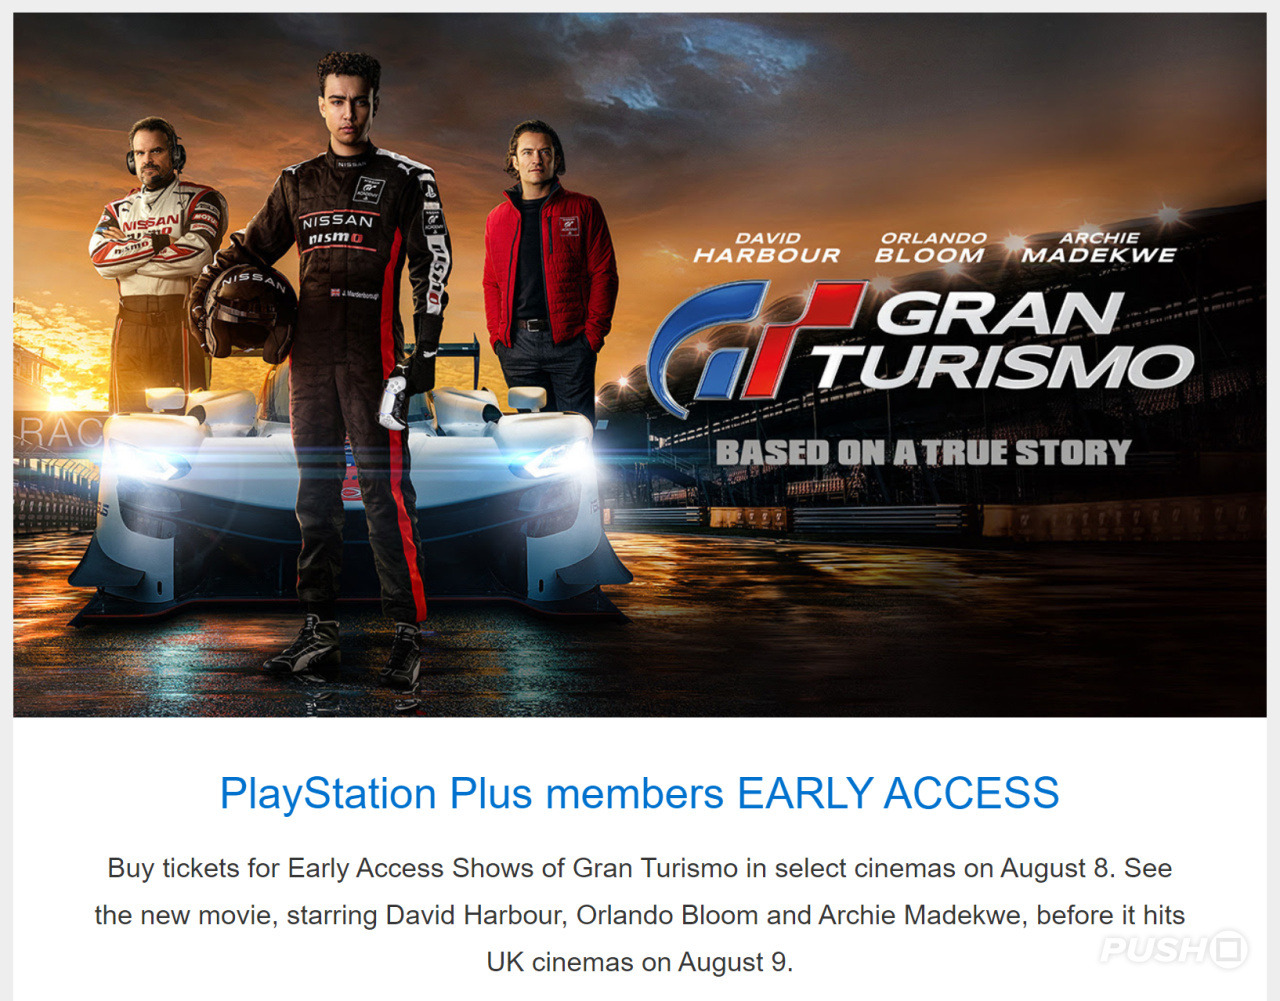 PlayStation Plus Extra - ACCOUNT valid till September 2024